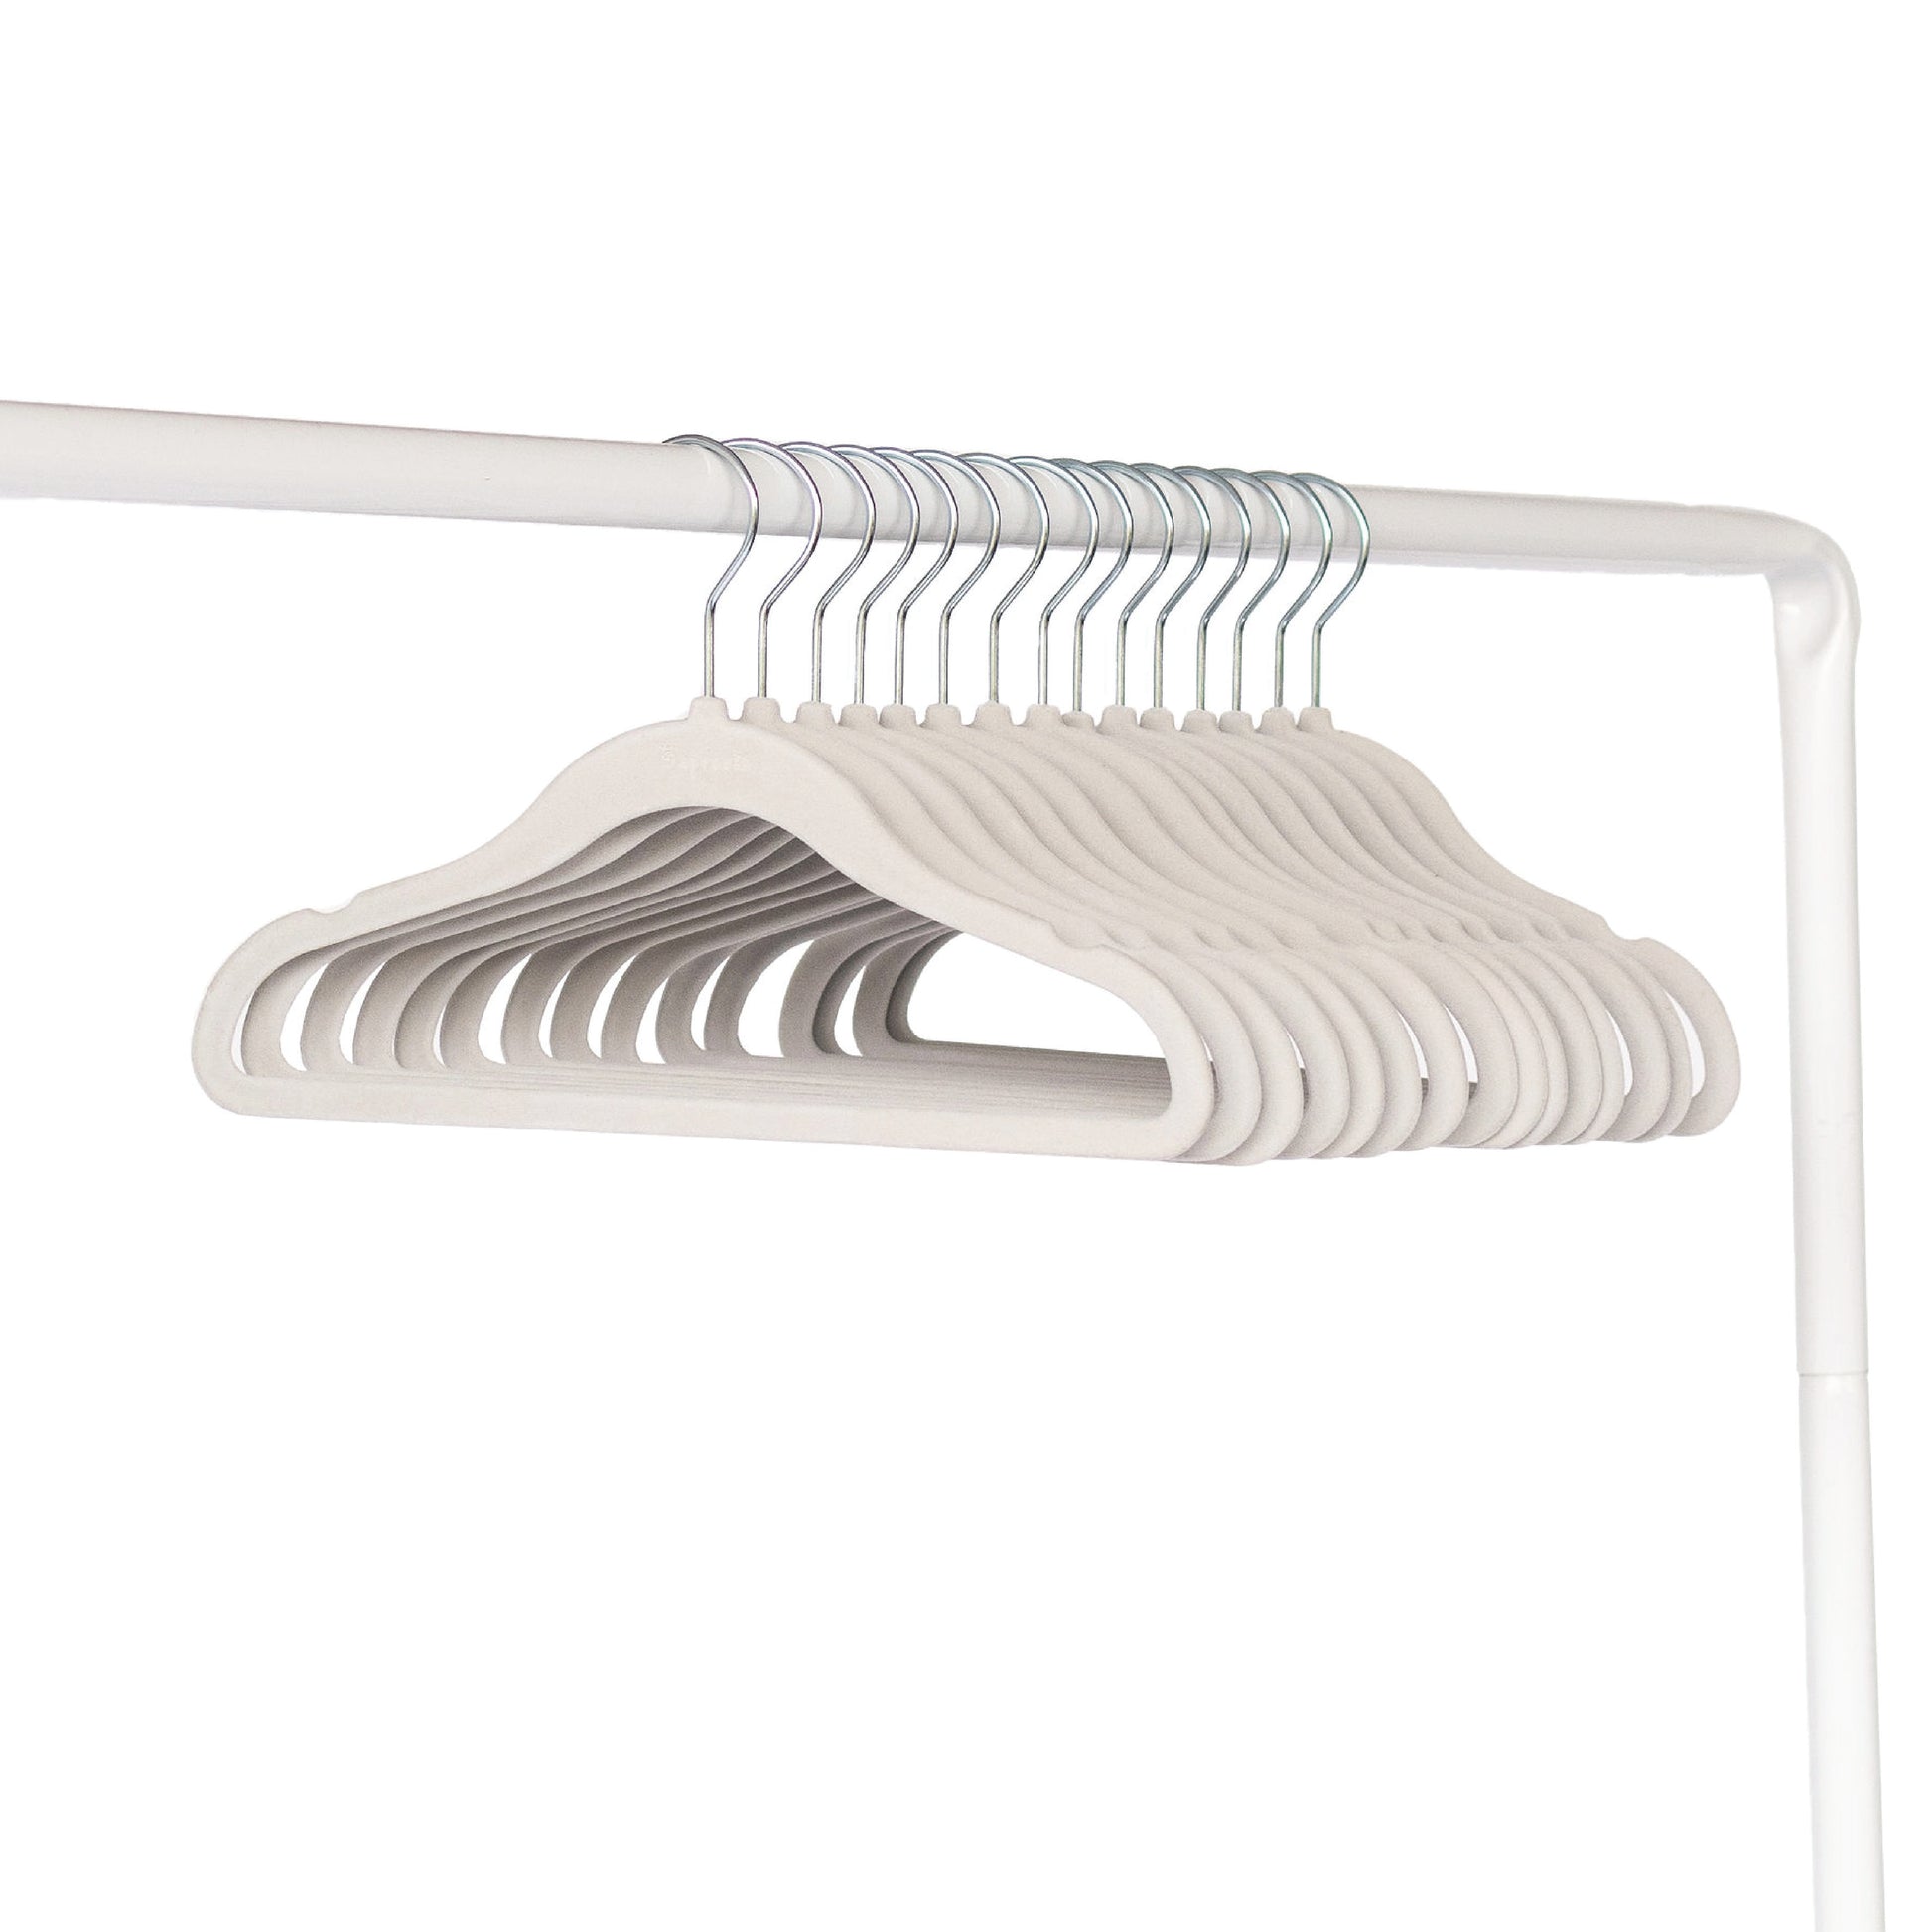 10 Pk Non-Slip Velvet Hangers w/ Metal Clips - White